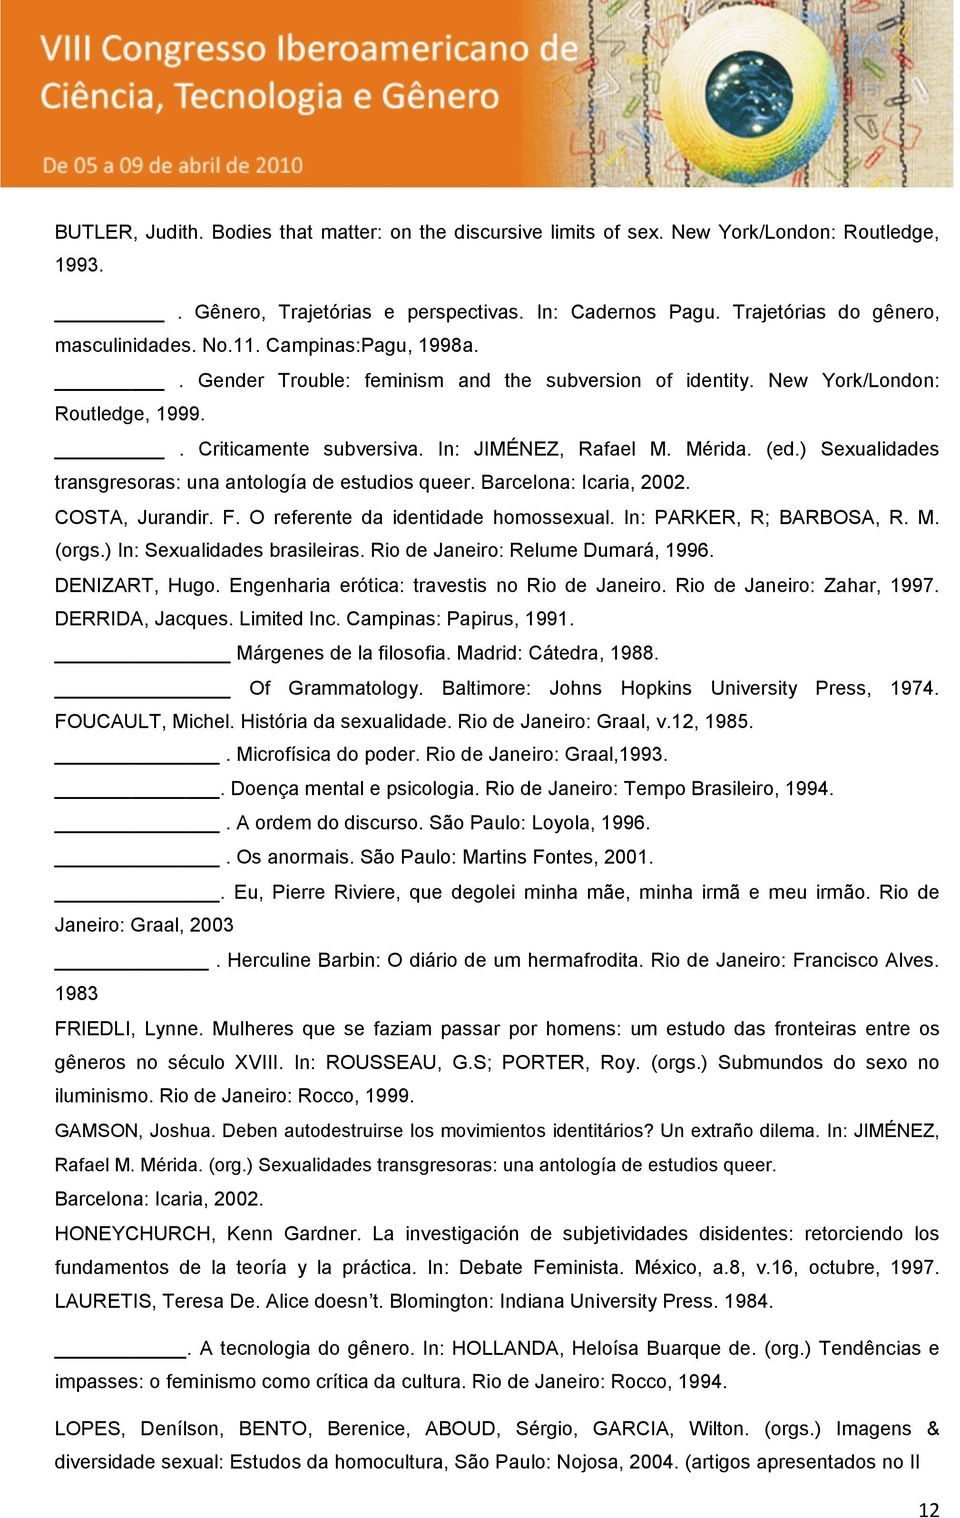 ) Sexualidades transgresoras: una antología de estudios queer. Barcelona: Icaria, 2002. COSTA, Jurandir. F. O referente da identidade homossexual. In: PARKER, R; BARBOSA, R. M. (orgs.